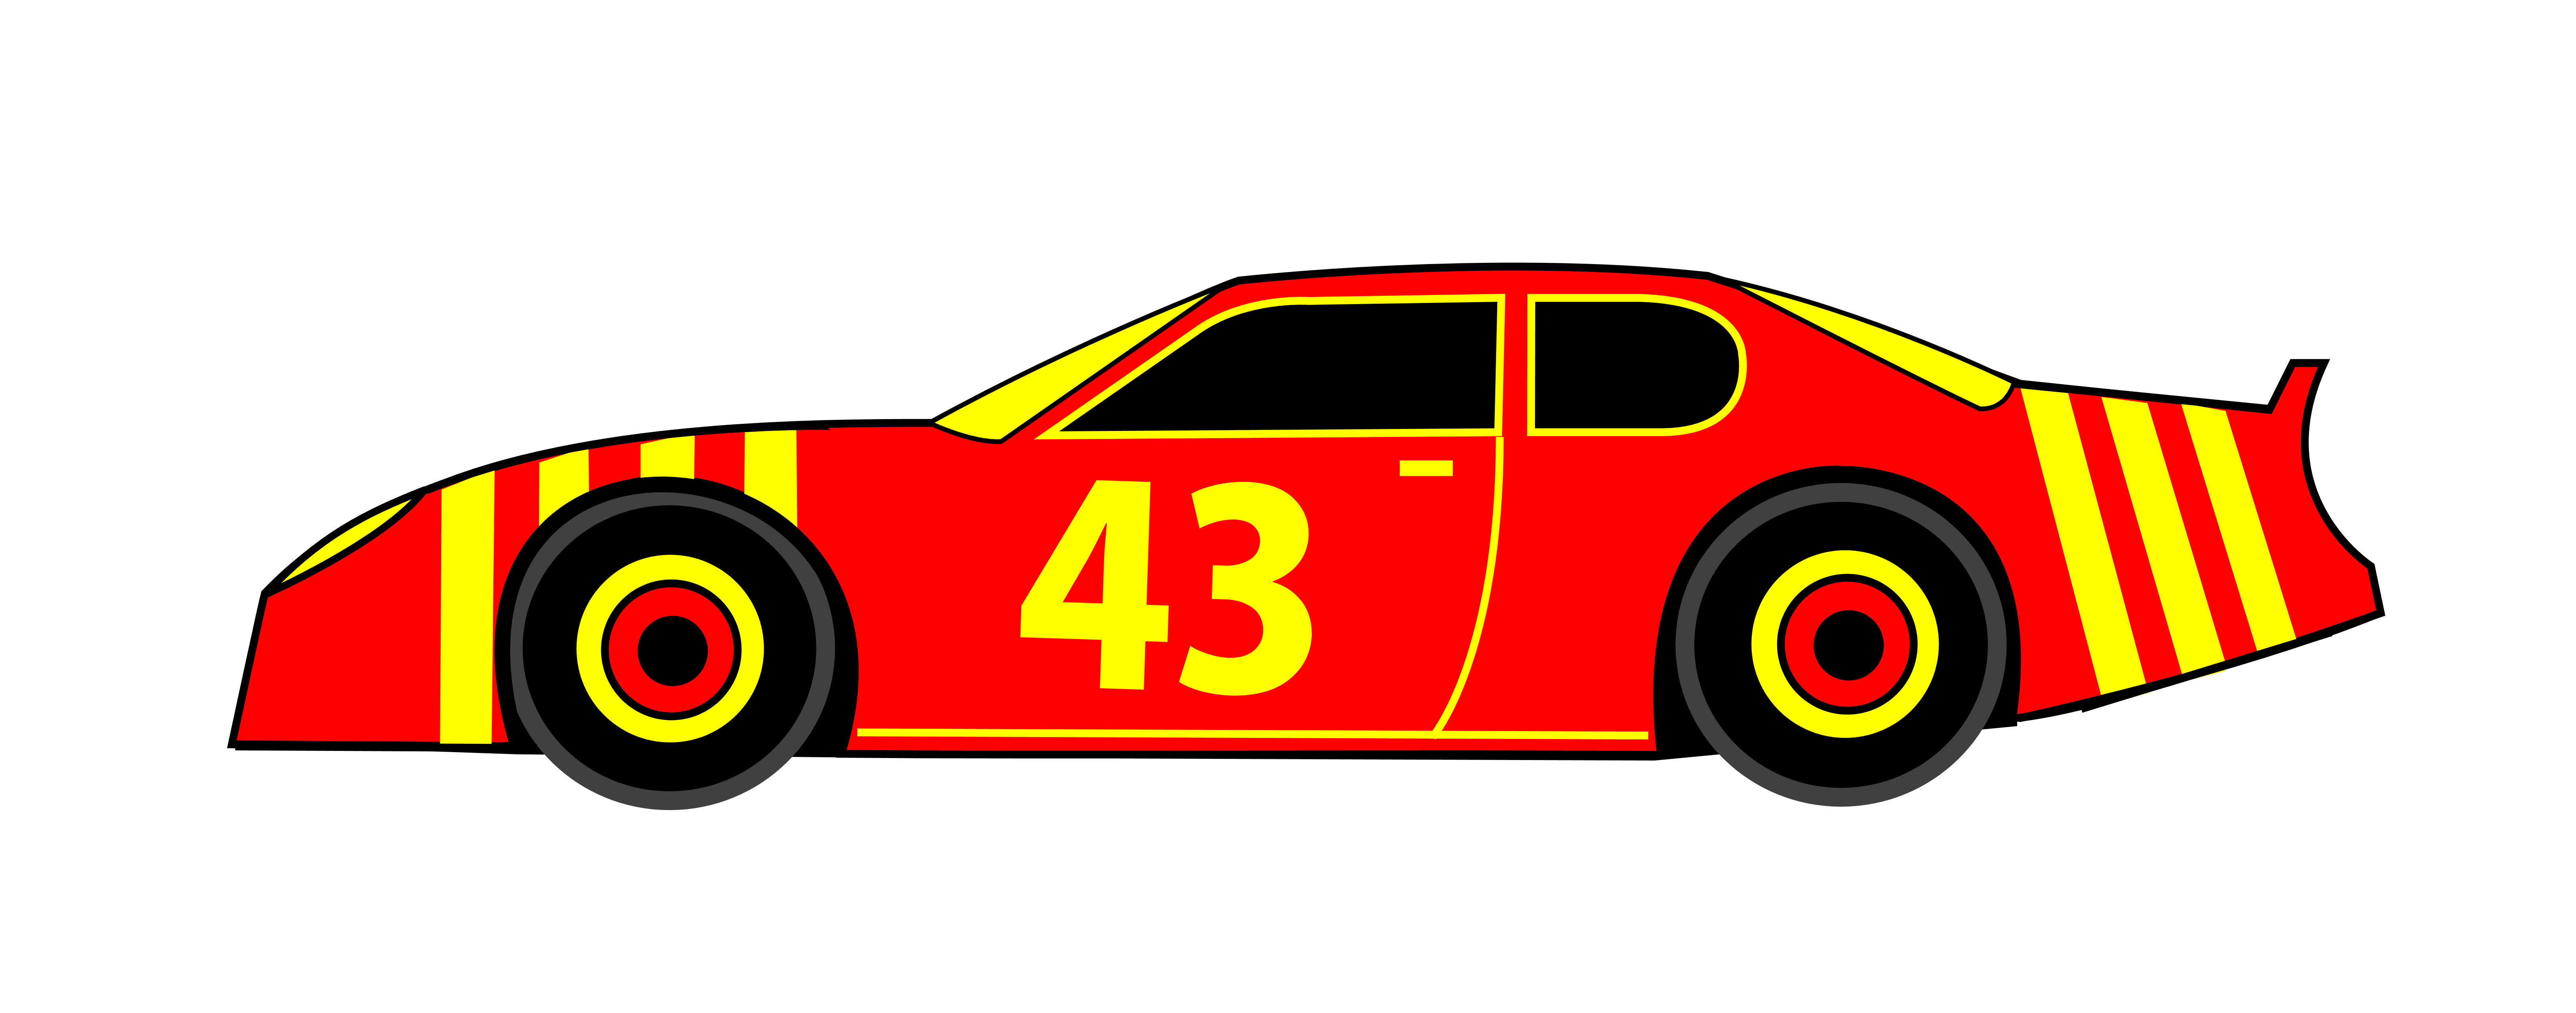 car clipart logo - photo #42